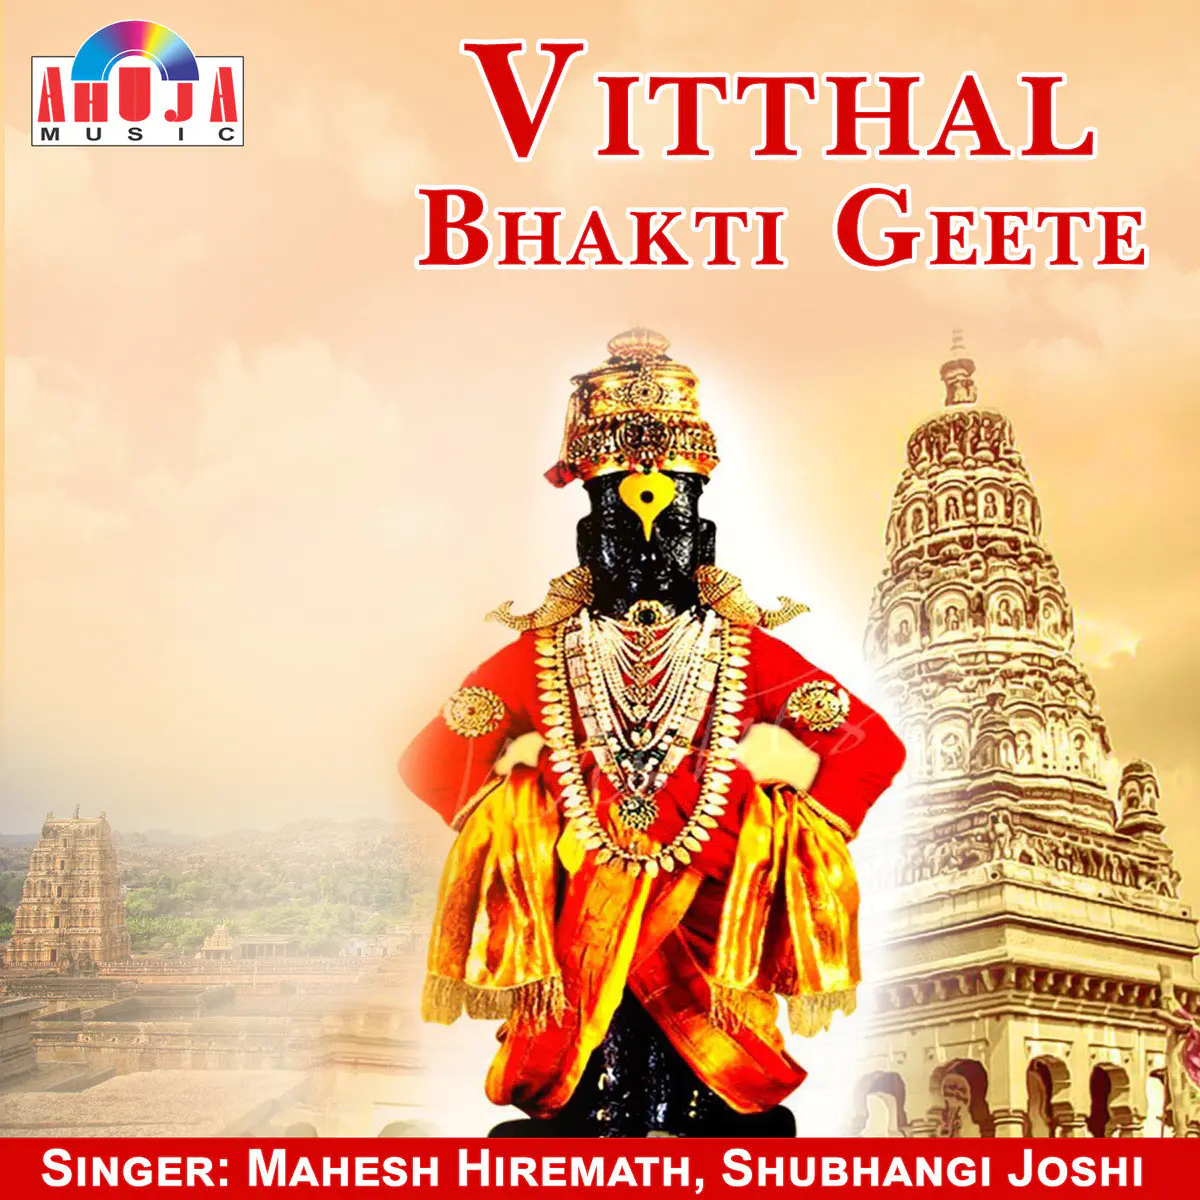 Vitthal Bhakti Geete Songs Download Vitthal Bhakti Geete Mp3 Marathi Songs Online Free On Gaana Com